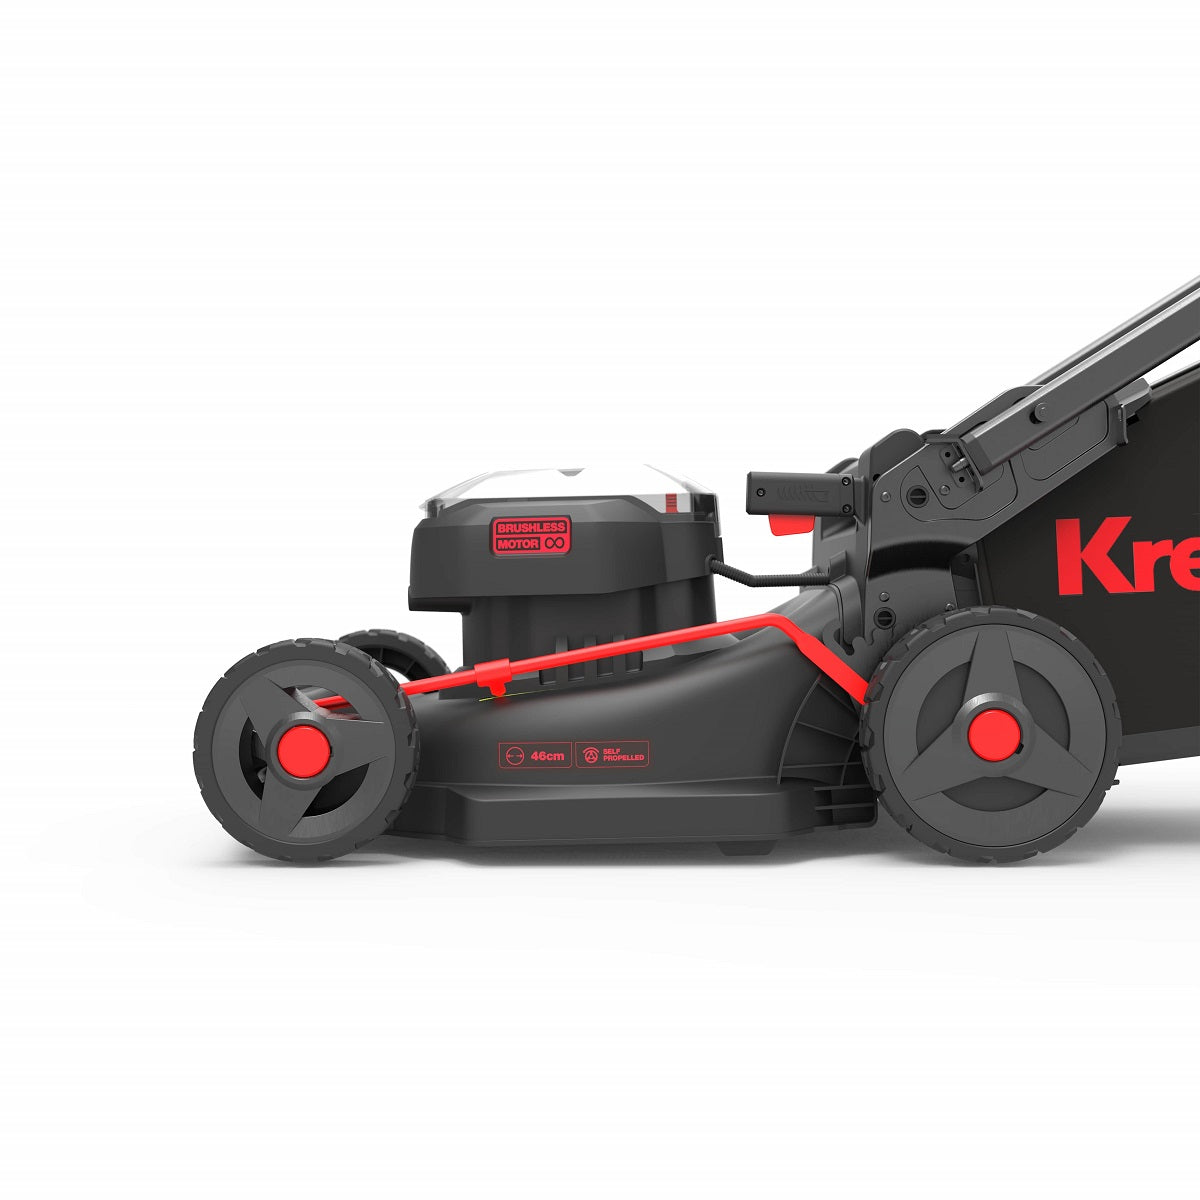 Kress KG757E.9 60V BL 46cm Self-Propelled Mower - Bare